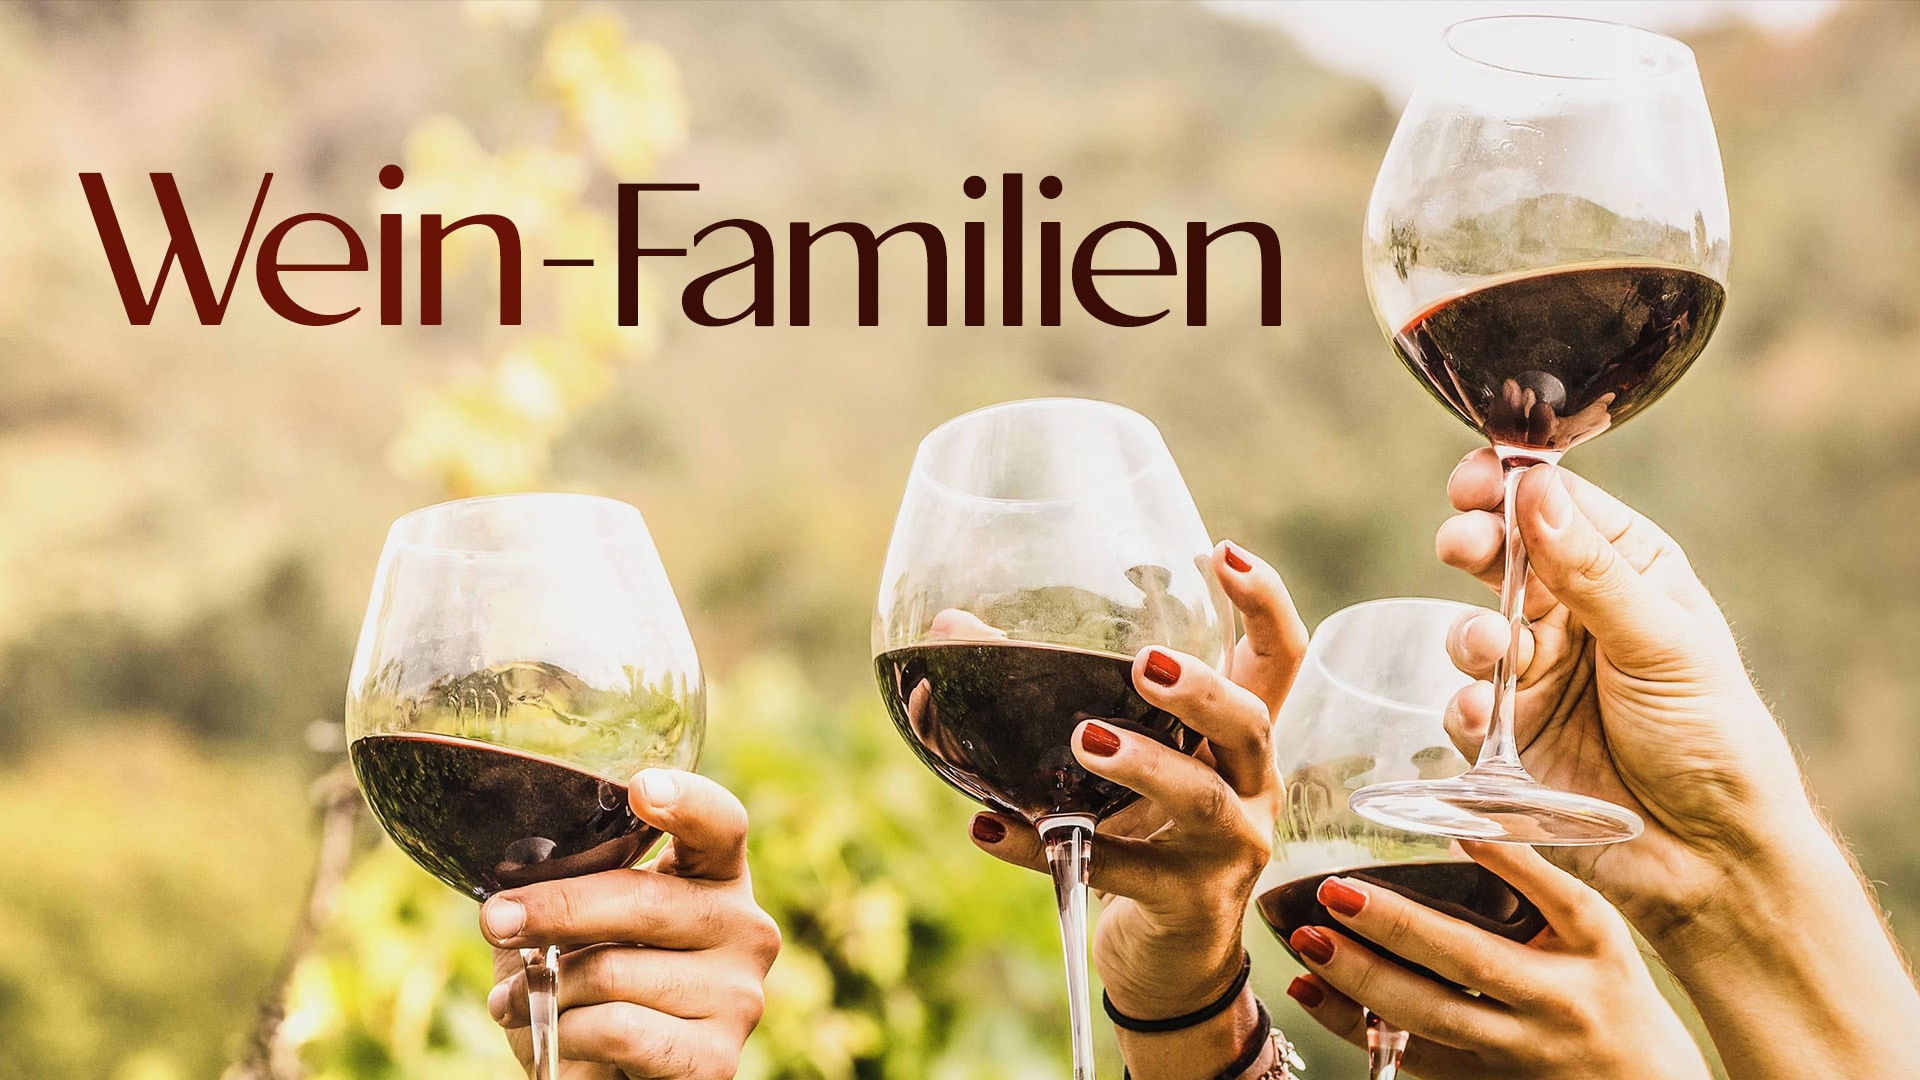 Wein-Familien